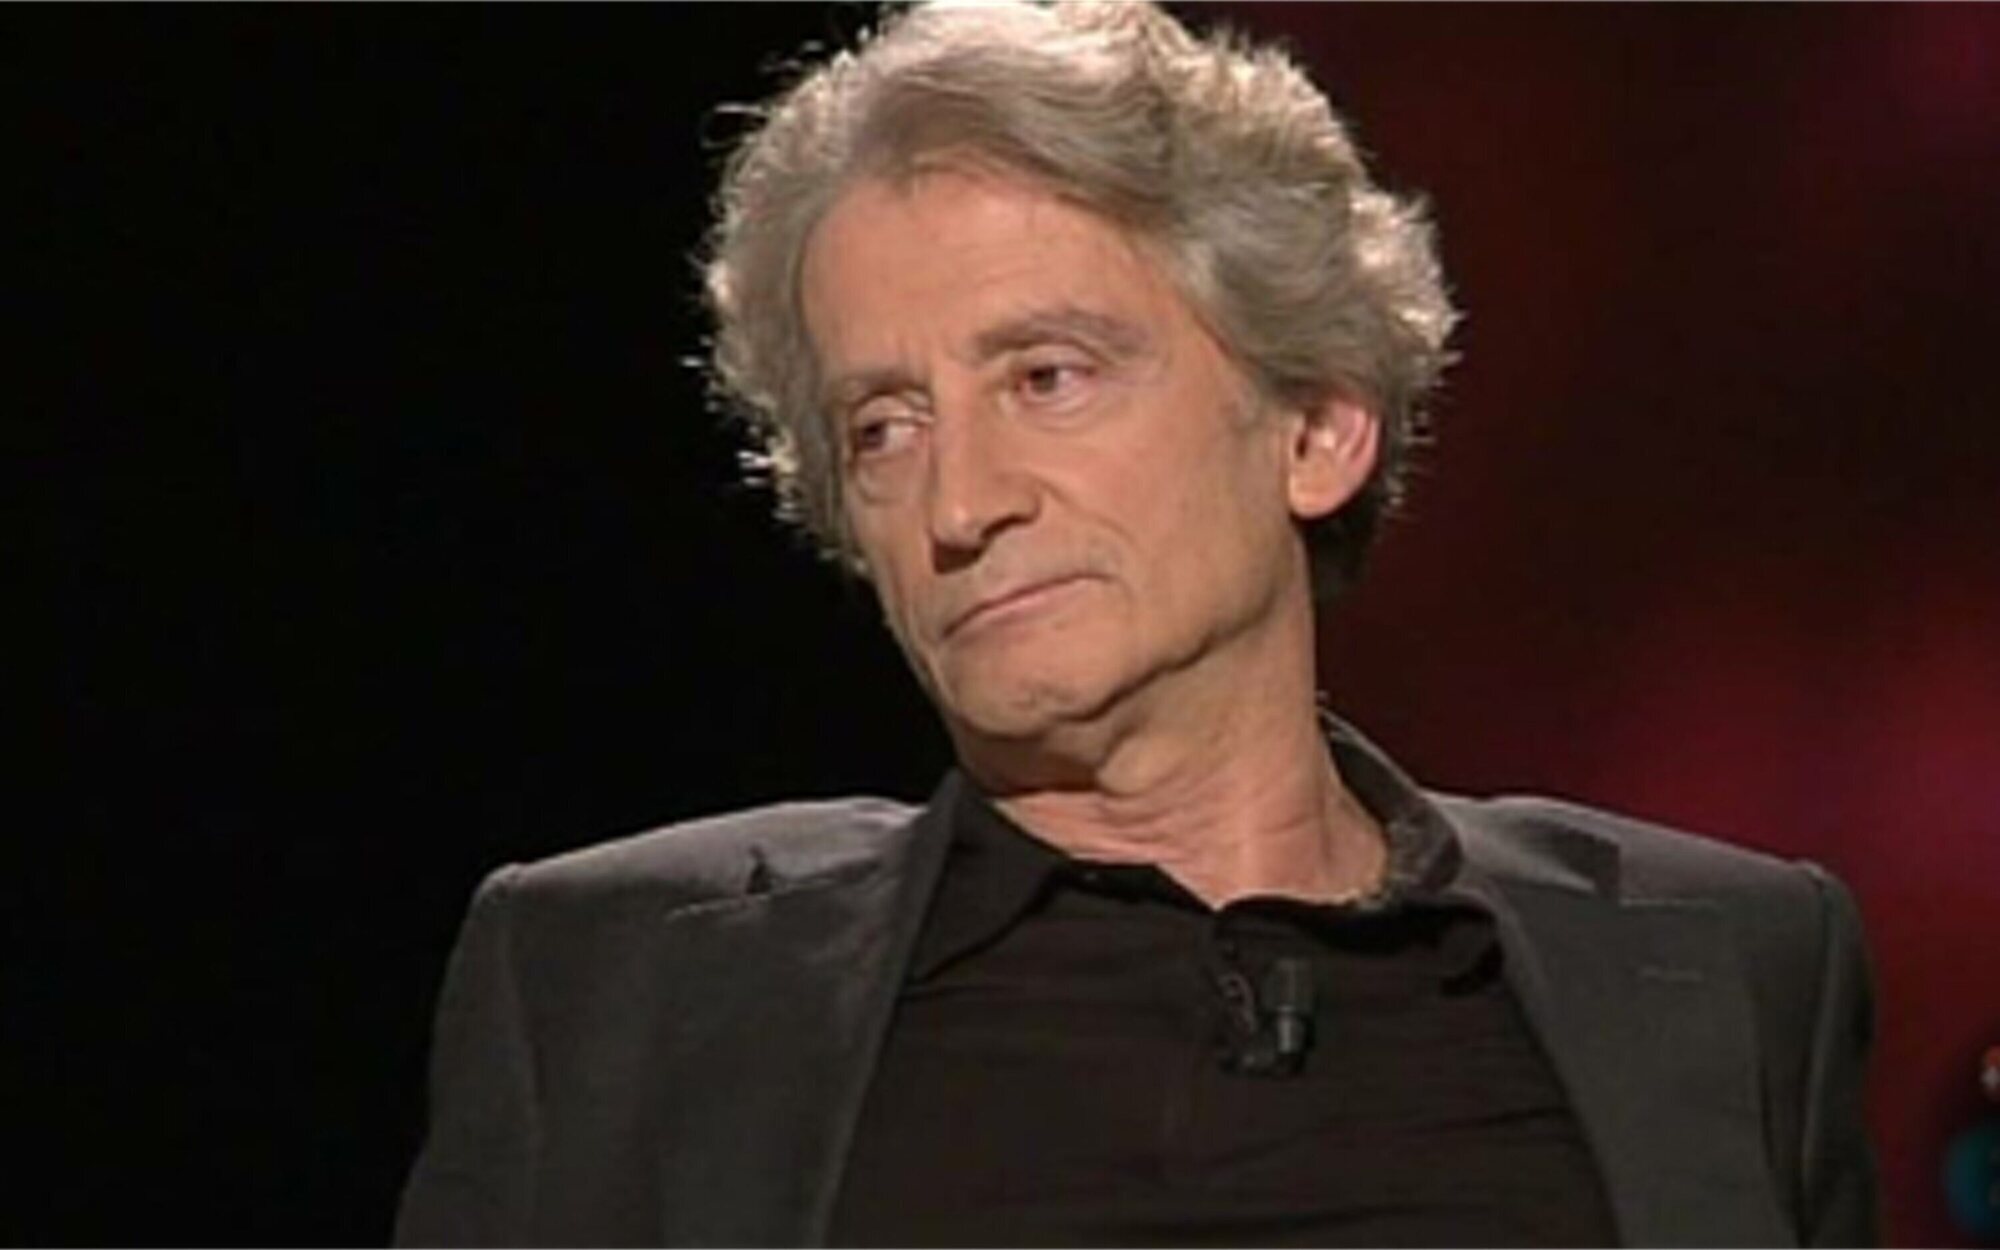 Muere Antonio Gasset, presentador de 'Días de cine' en TVE, a los 75 años